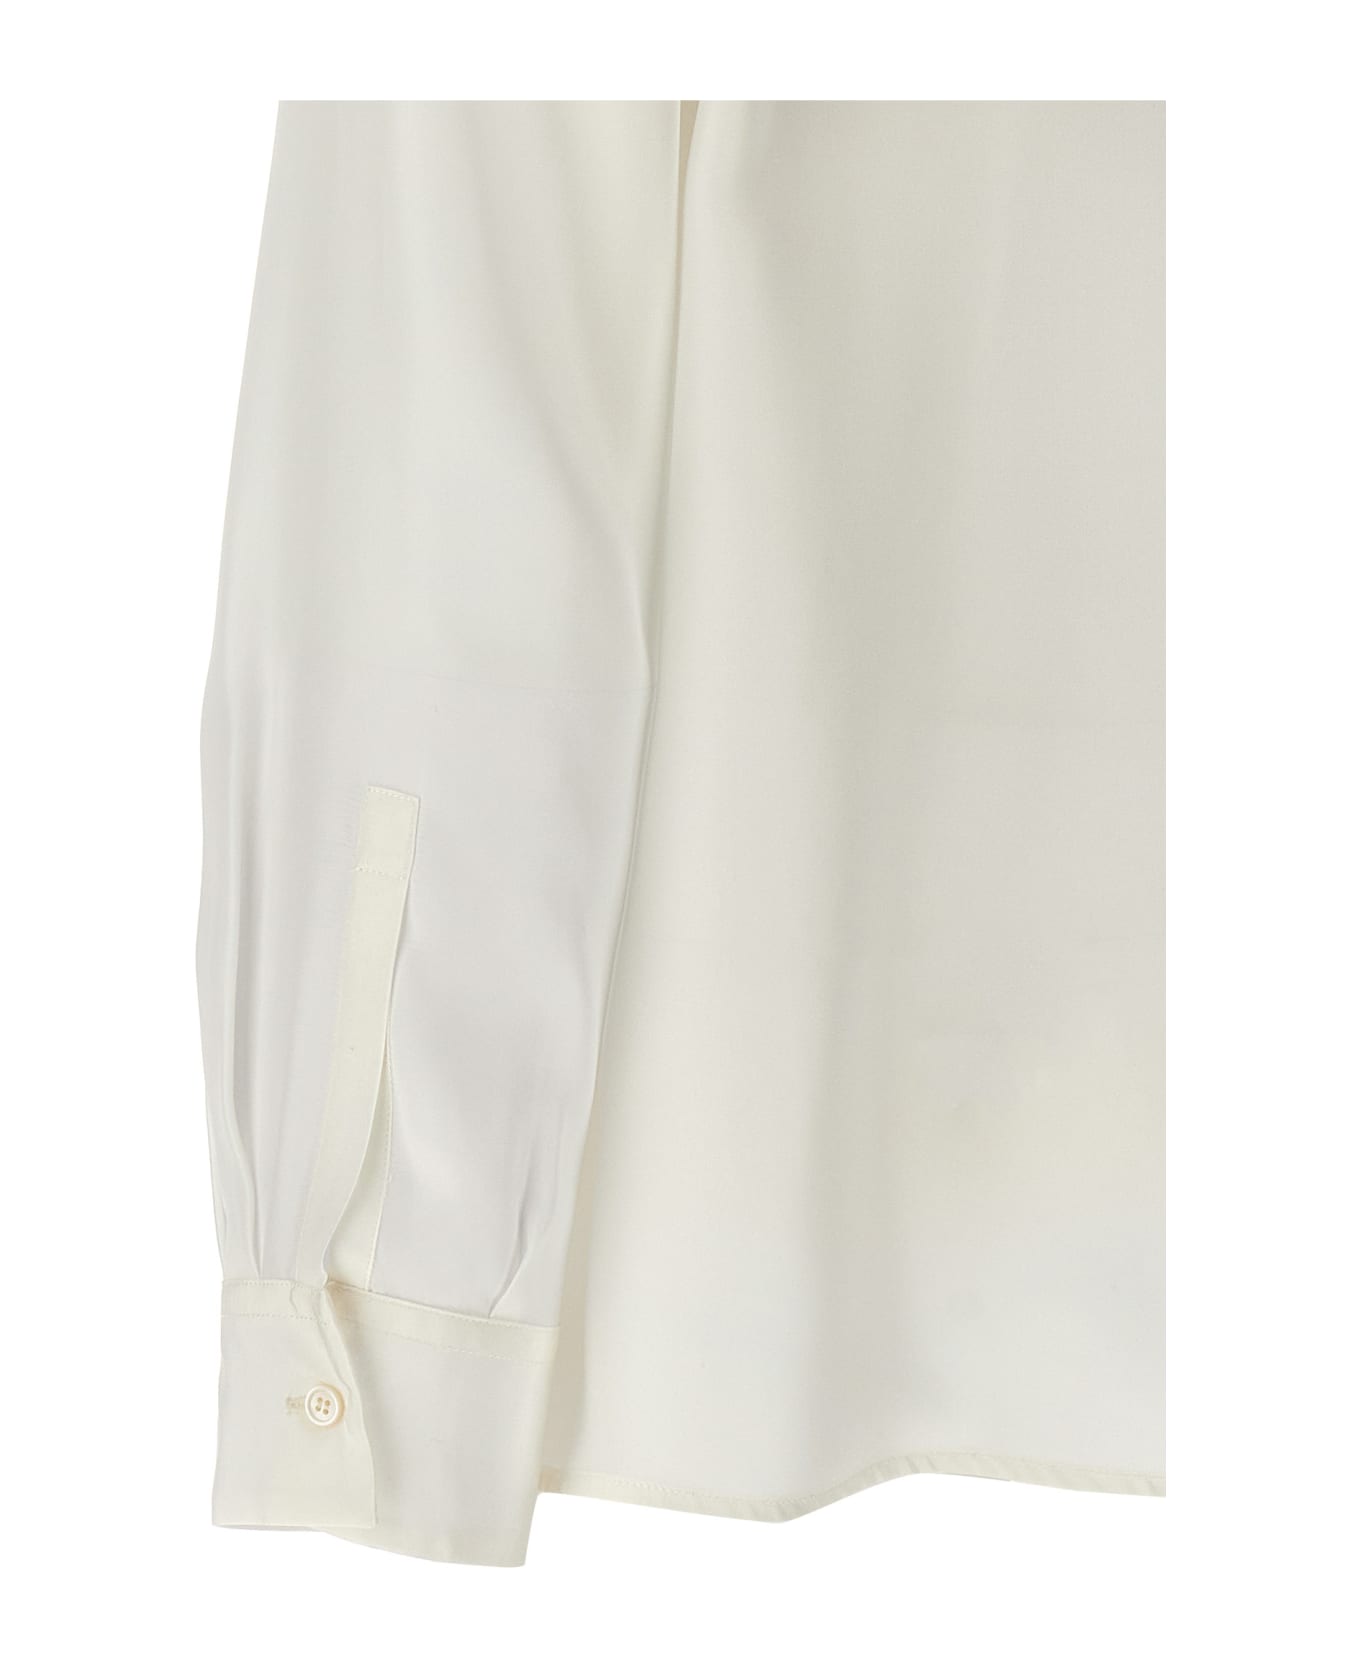 Fabiana Filippi Silk Shirt - White シャツ